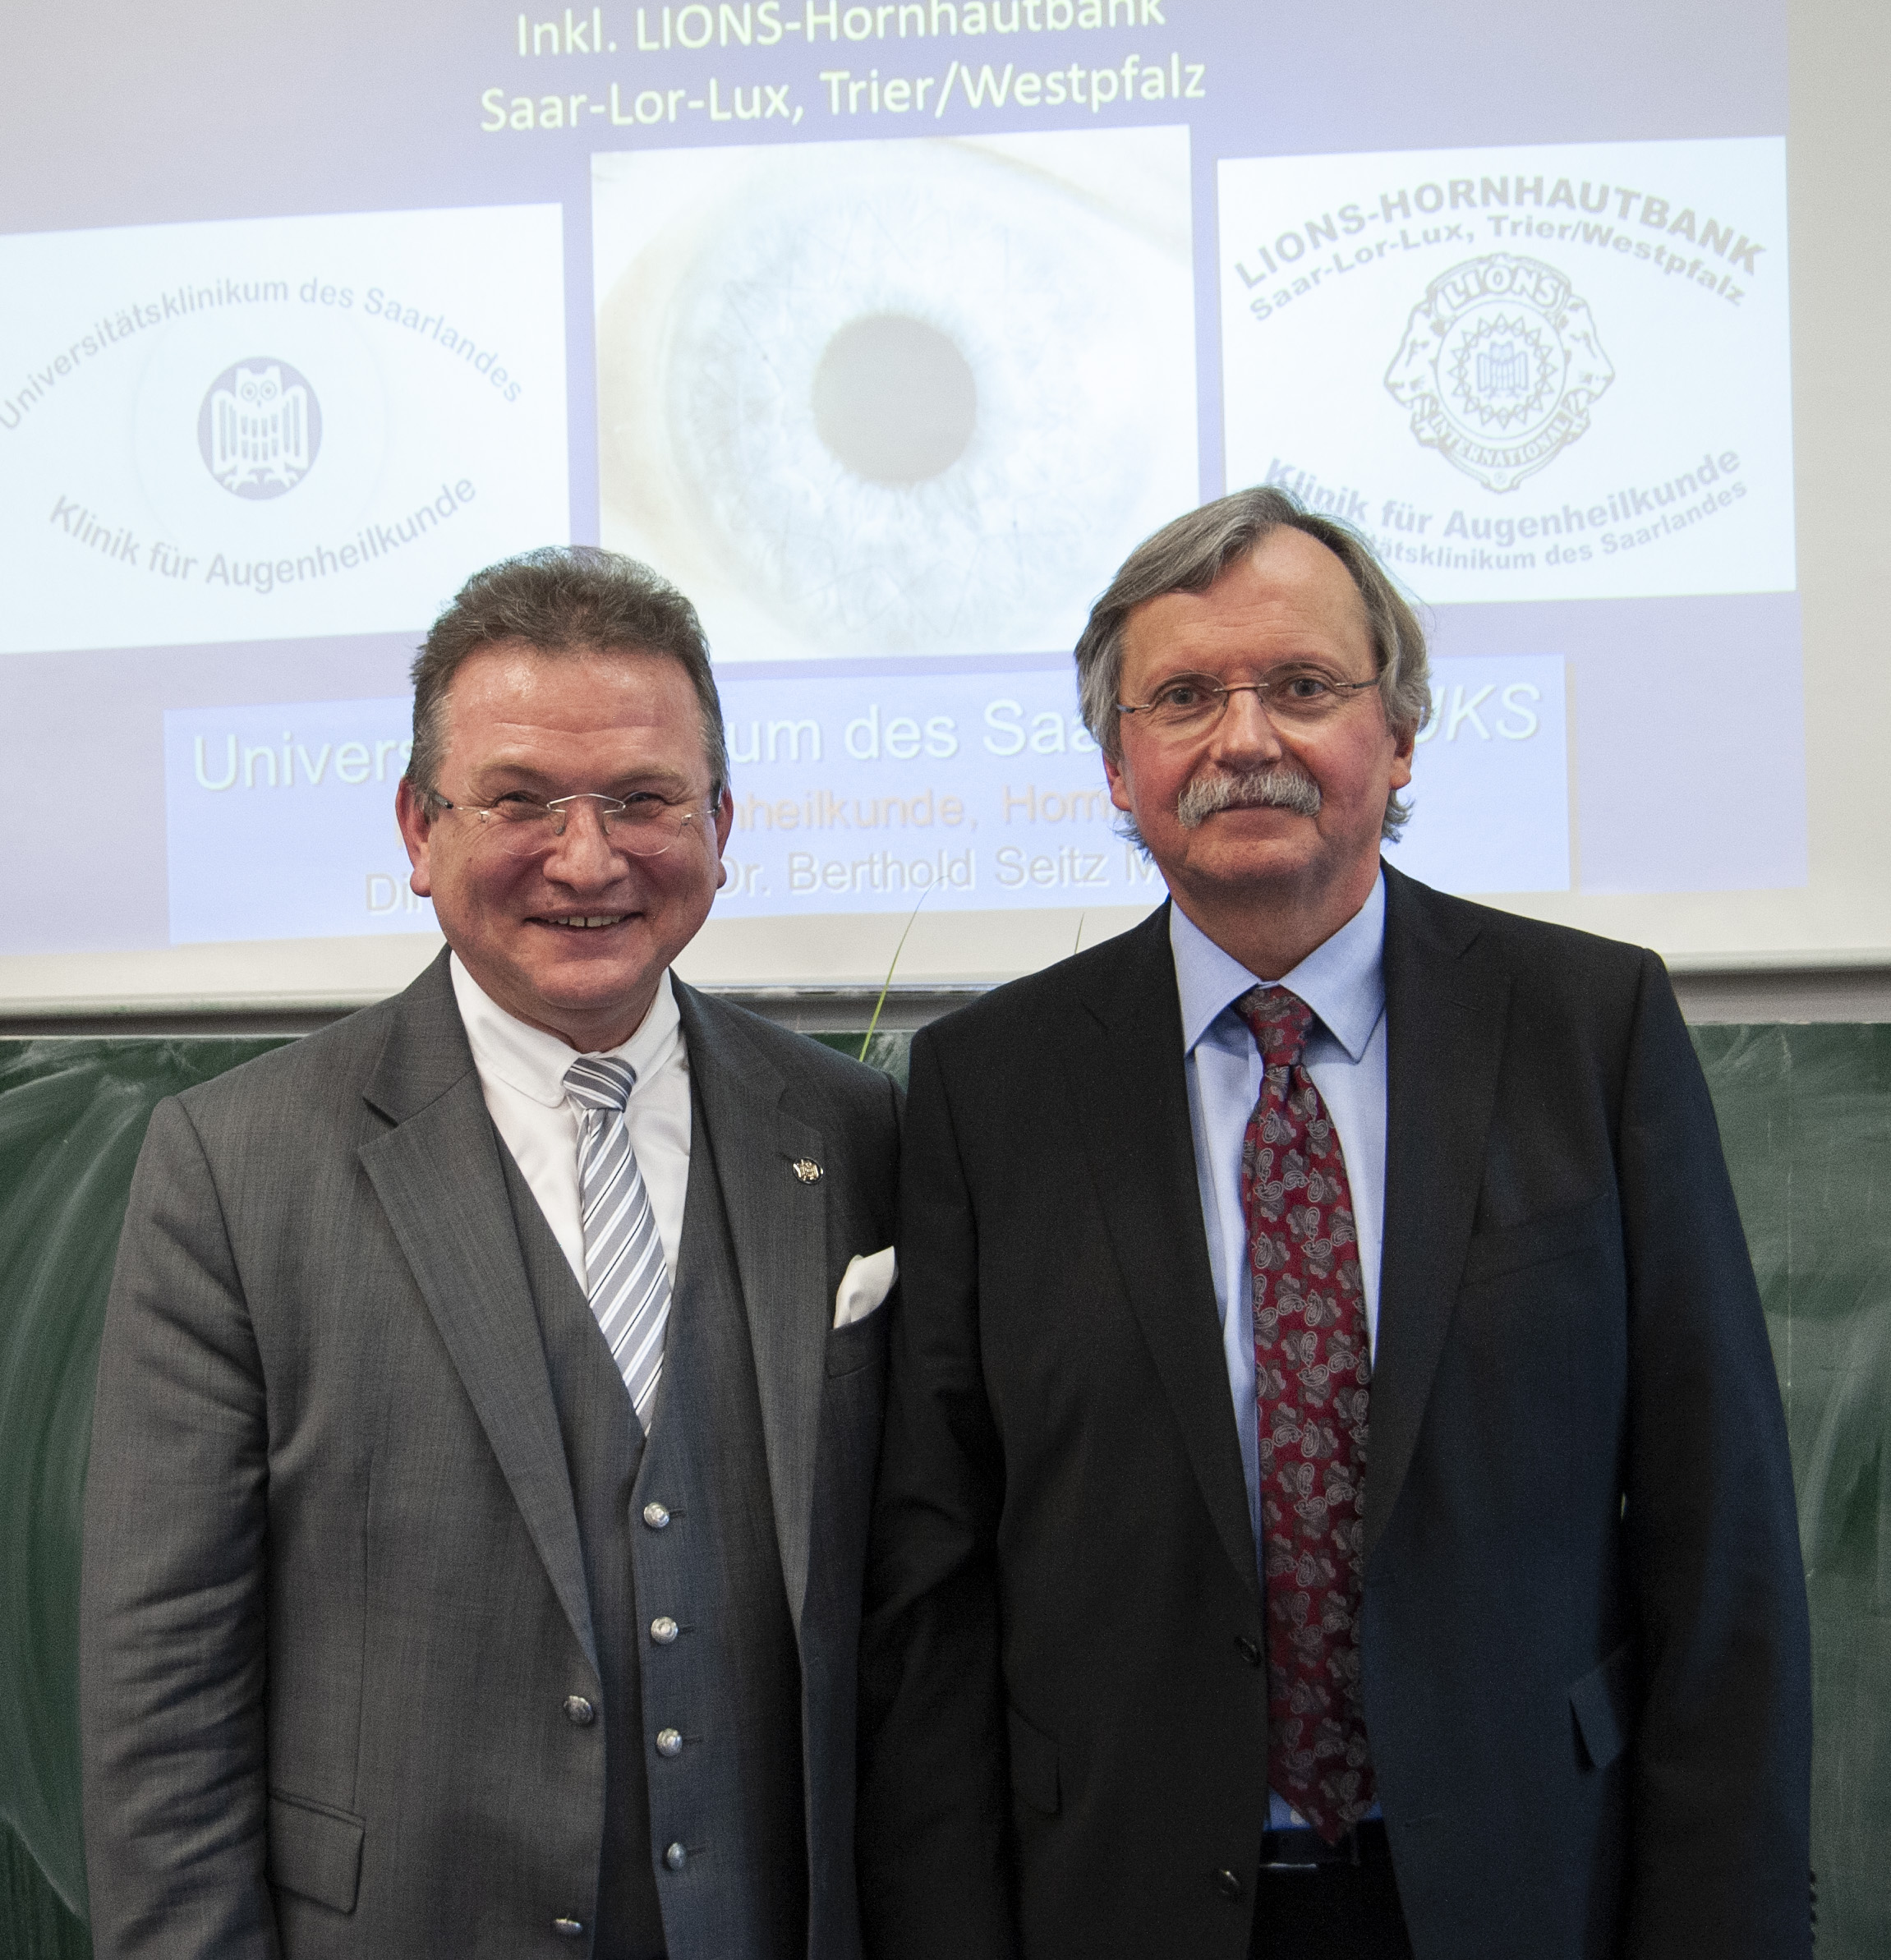 Prof. Seitz and Dr. Schmitt